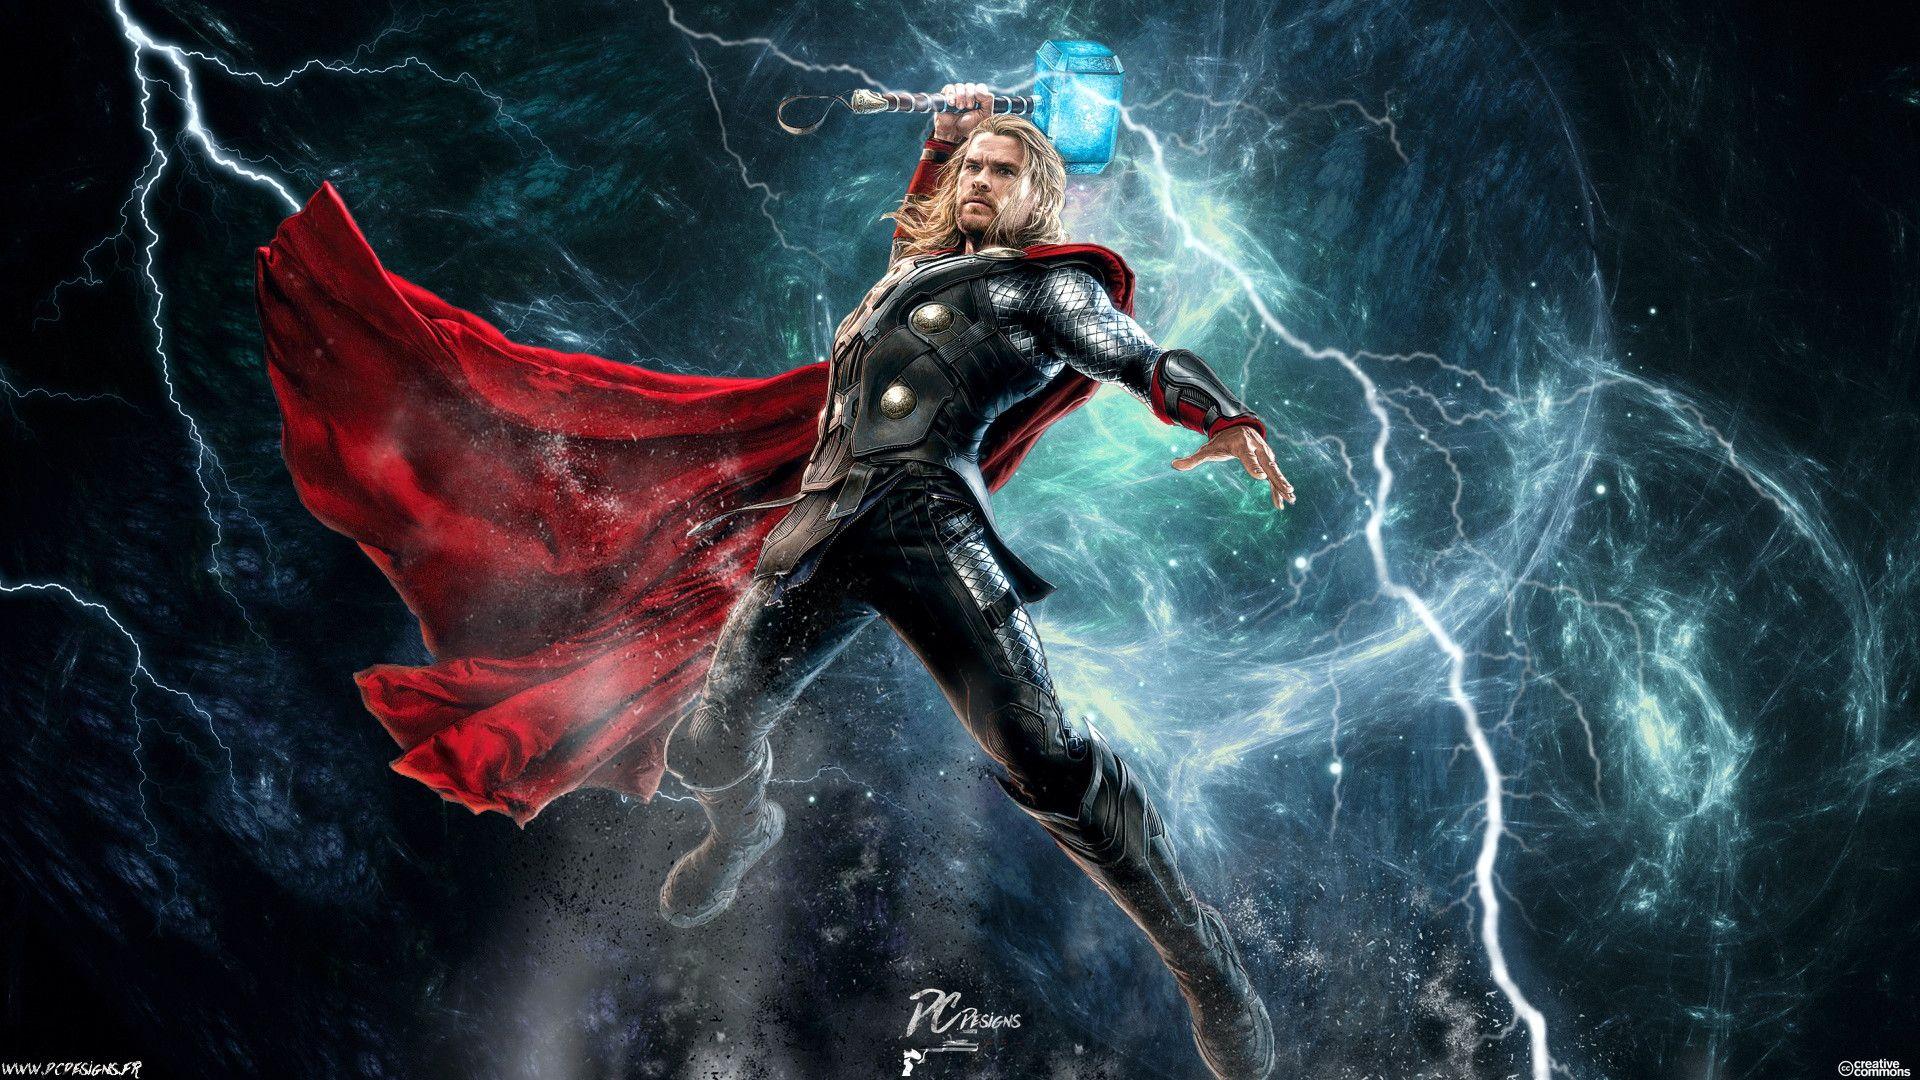 4K Thor Wallpapers - Điều gì đặc biệt khiến Thor trở thành một trong những siêu anh hùng được yêu thích nhất của Marvel? Hãy khám phá ngay trên màn hình điện thoại của bạn với bộ sưu tập hình nền Thor 4K đẹp mắt và sống động.